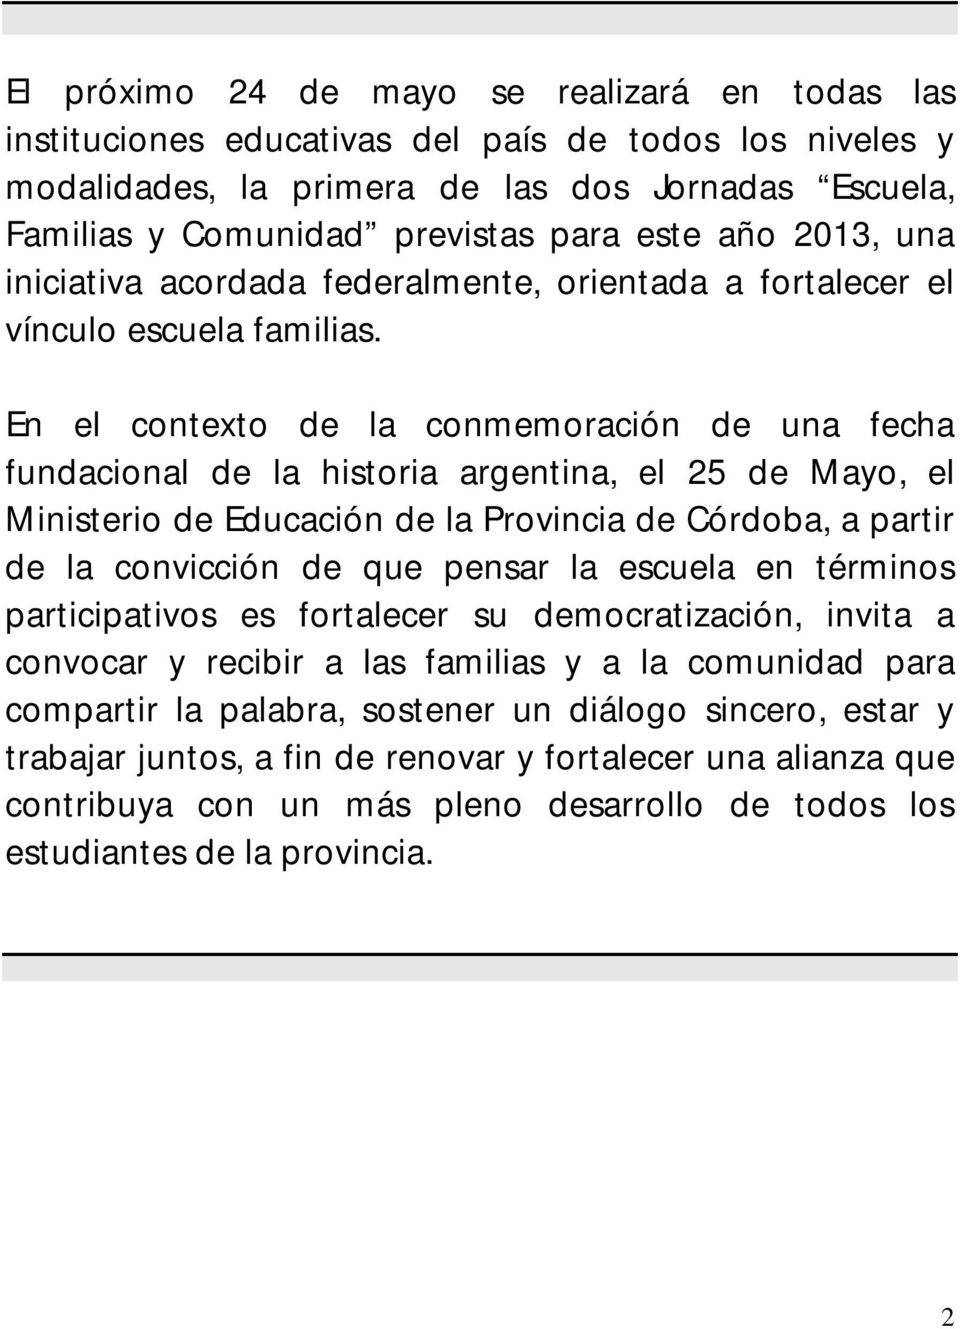 En el contexto de la conmemoración de una fecha fundacional de la historia argentina, el 25 de Mayo, el Ministerio de Educación de la Provincia de Córdoba, a partir de la convicción de que pensar la